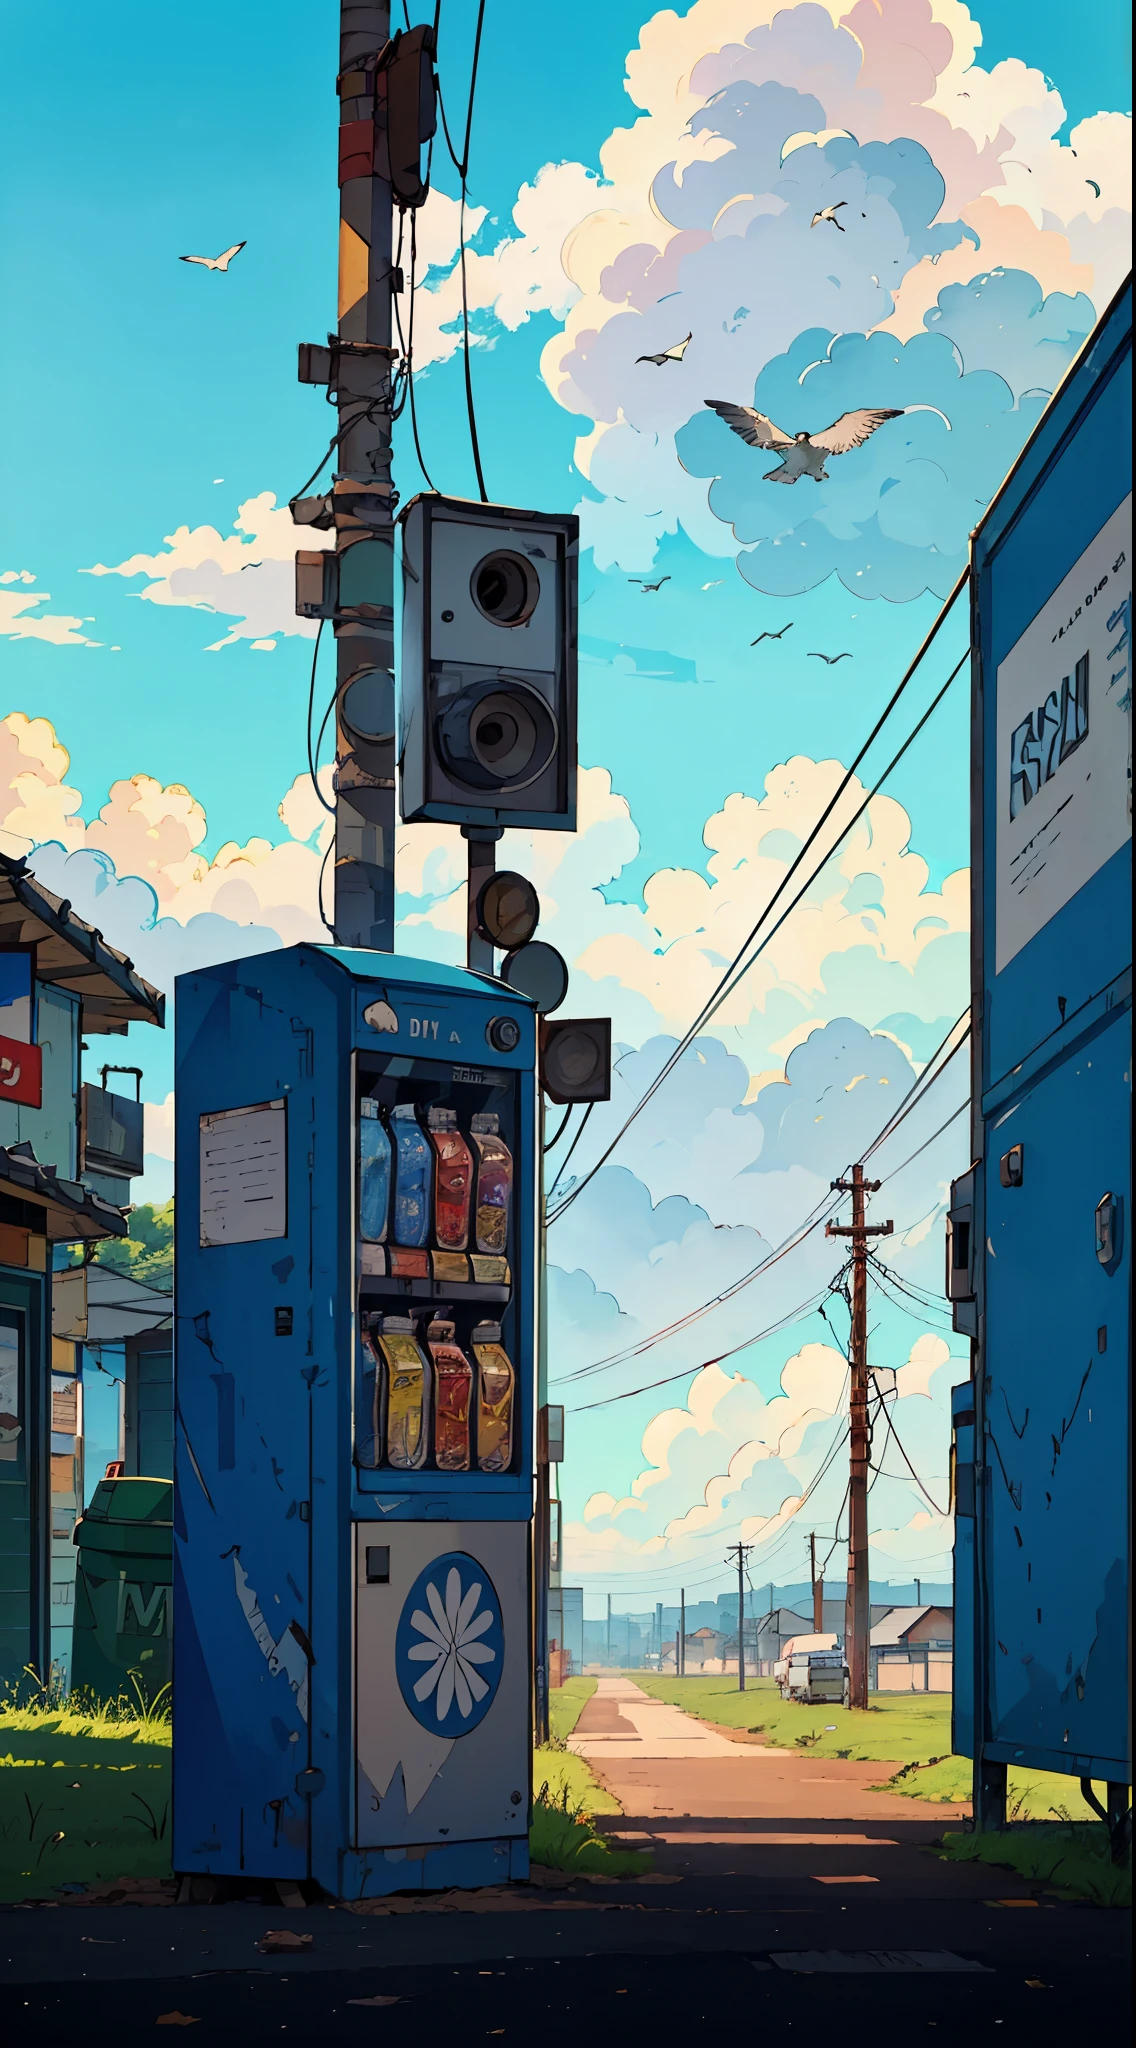 Торговый автомат на расстоянии на обочине дороги с мусорным баком, телефонные столбы, облачное небо, птицы, автомобили на заднем плане, широкоугольный снимок, очень подробный, Сильно заточенный